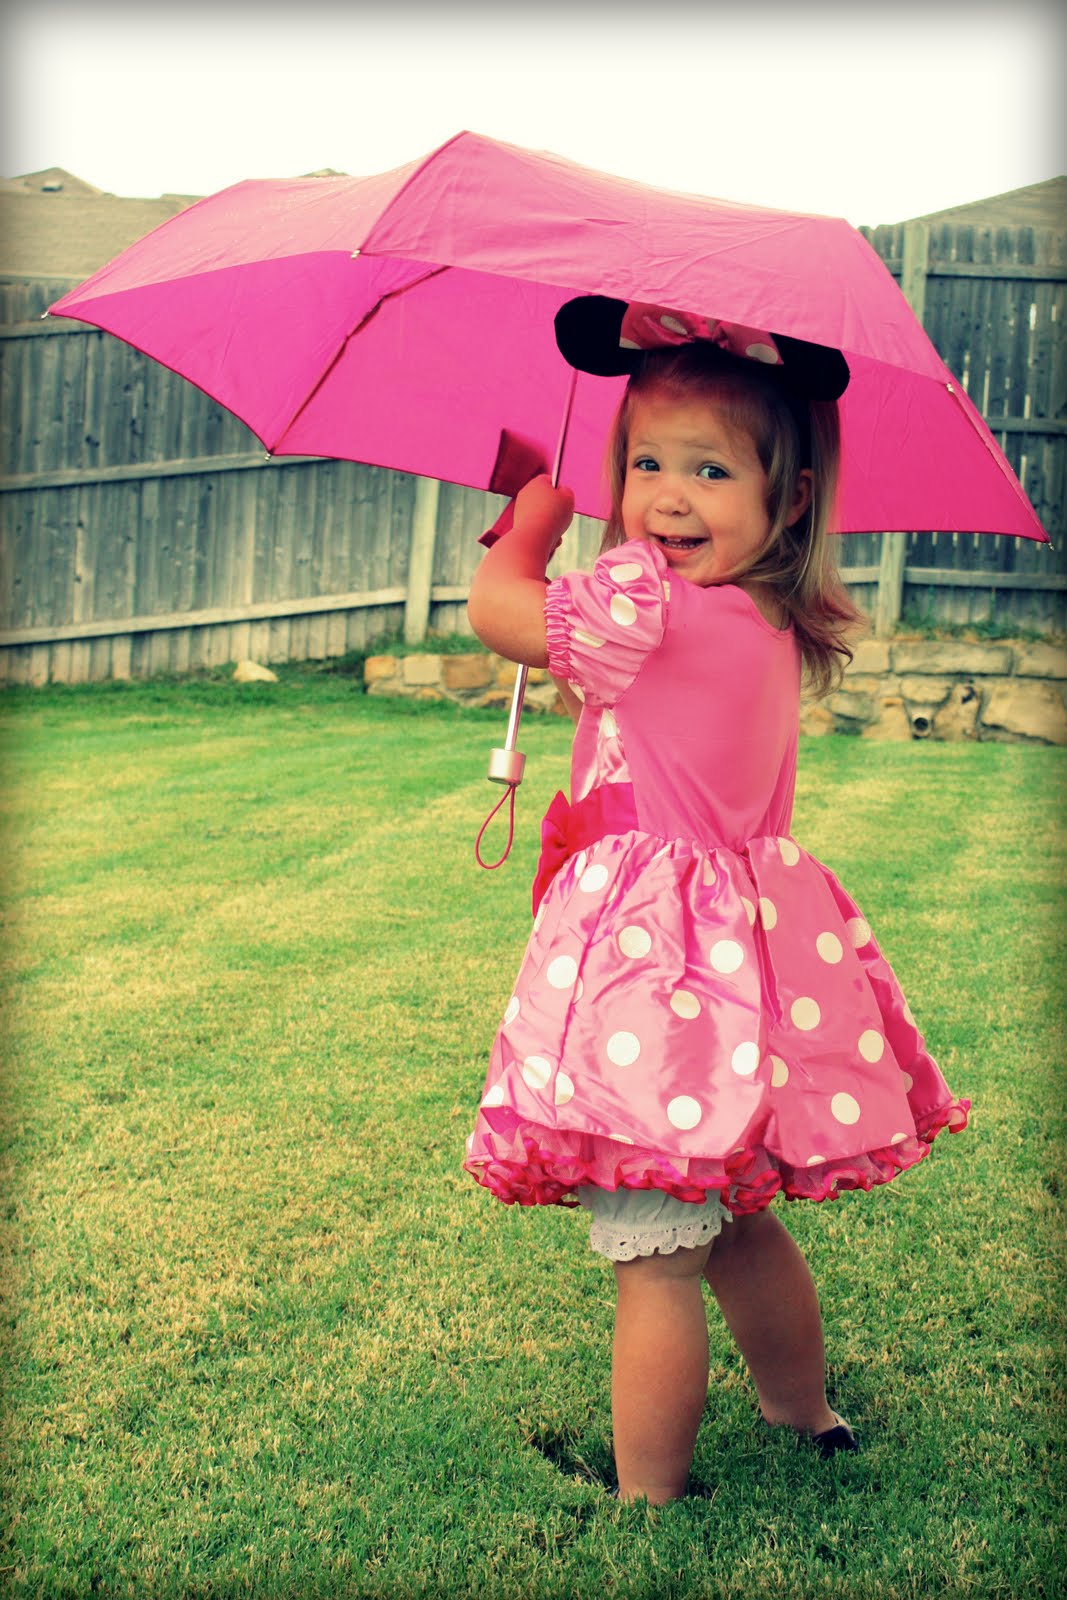 McDoniel Family: Rainy Day Dress-Up Fun